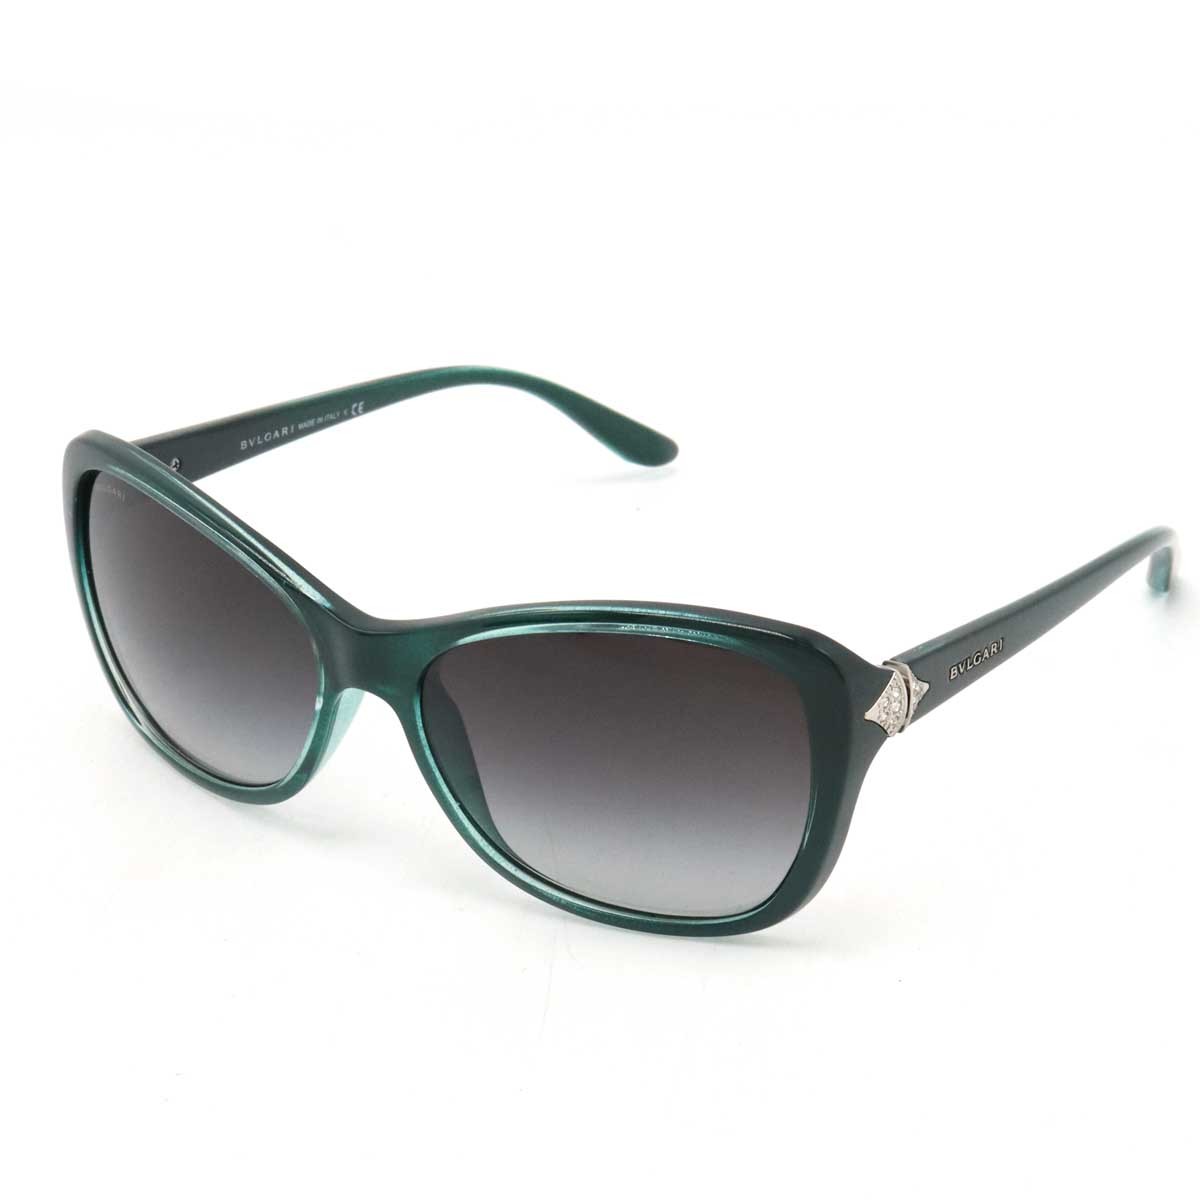 BVLGARI BVLGARY sunglasses black gradation rhinestone green 57*16 135 3N